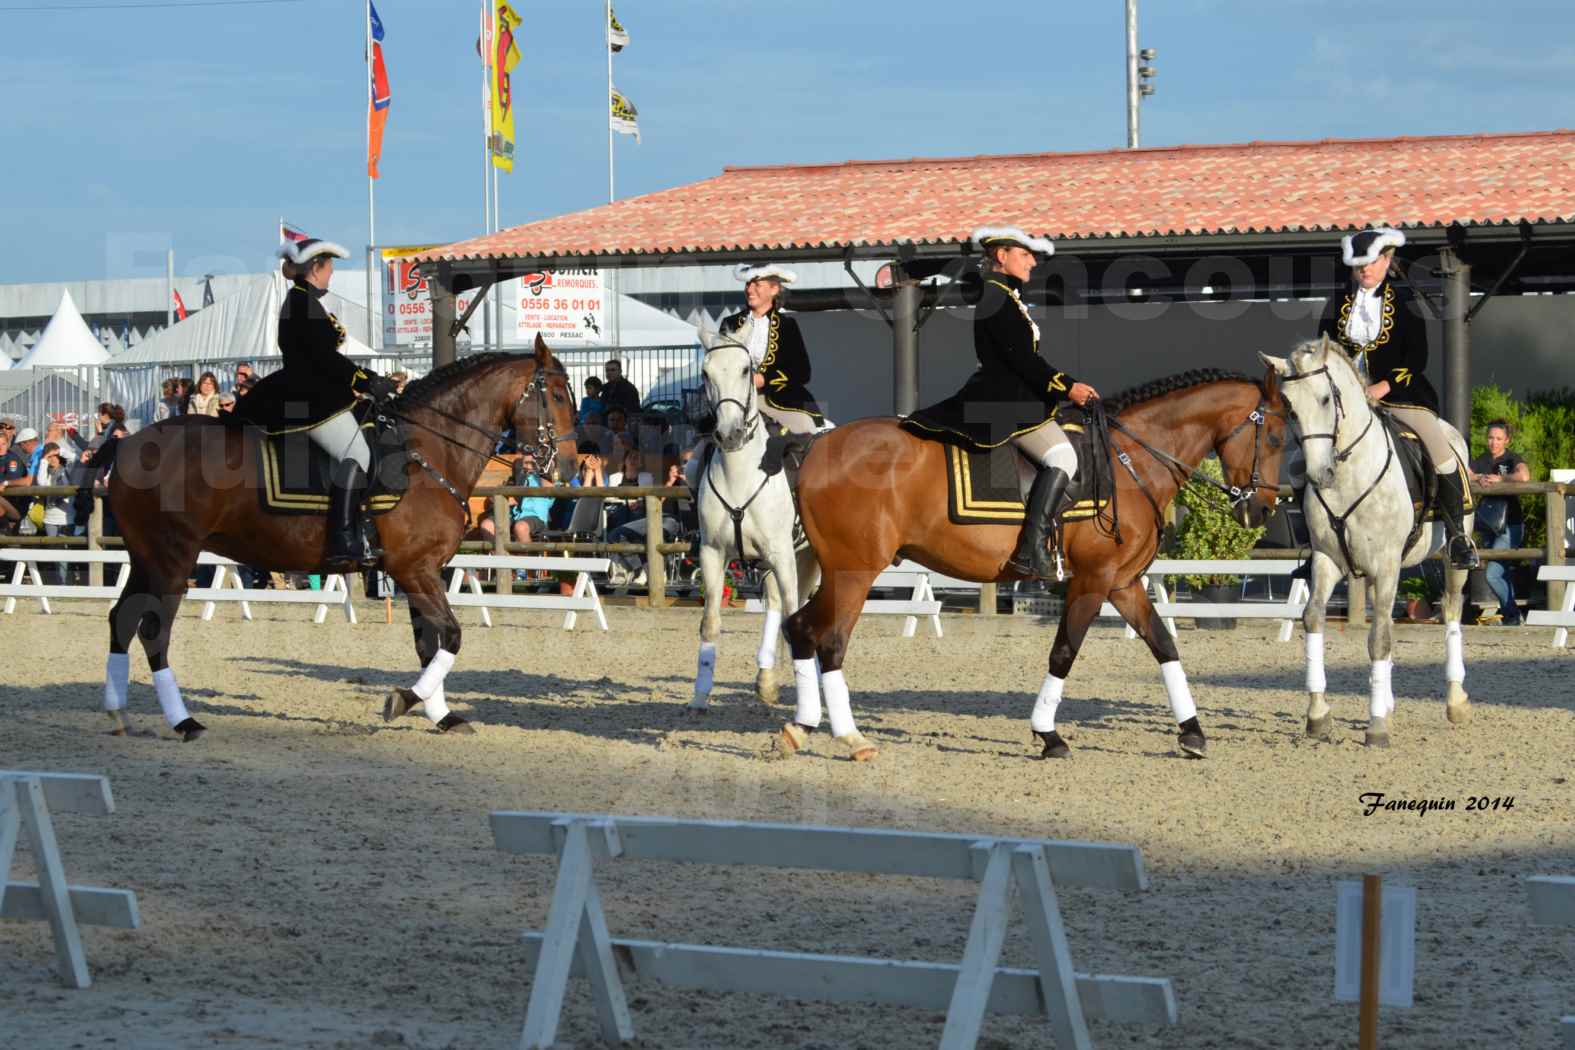 Carrousel de cavalières Equitation de travail lors du salon "Equitaine" à Bordeaux en 2014 - 07